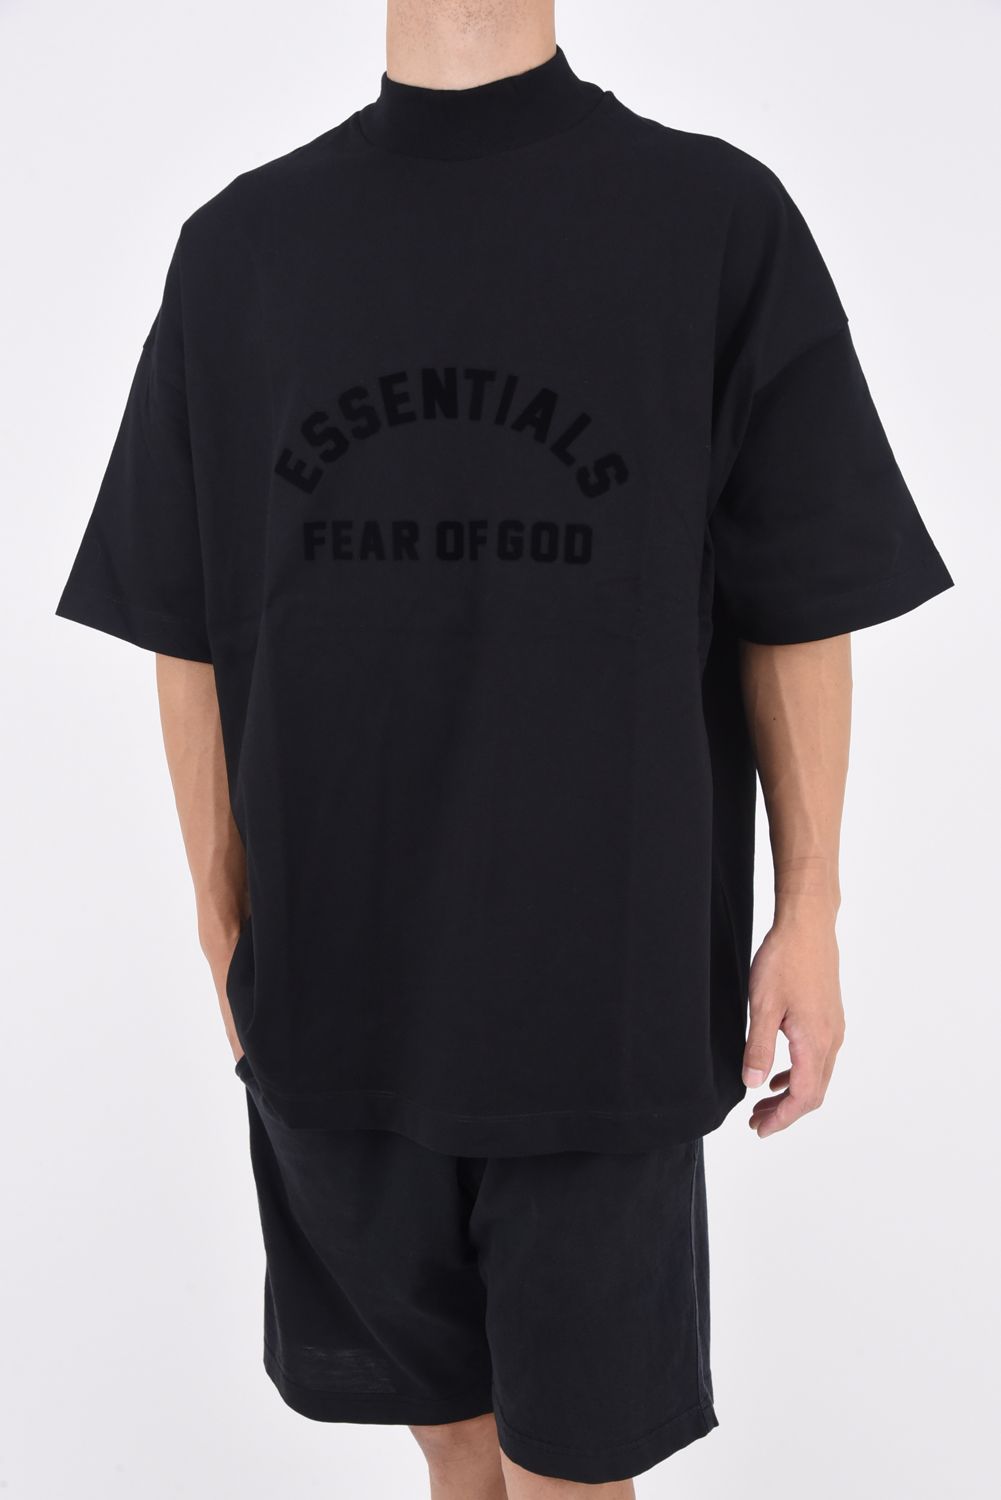 FEAR OF GOD Essentials ブラック ロゴ Tシャツ サイズMトップス - T